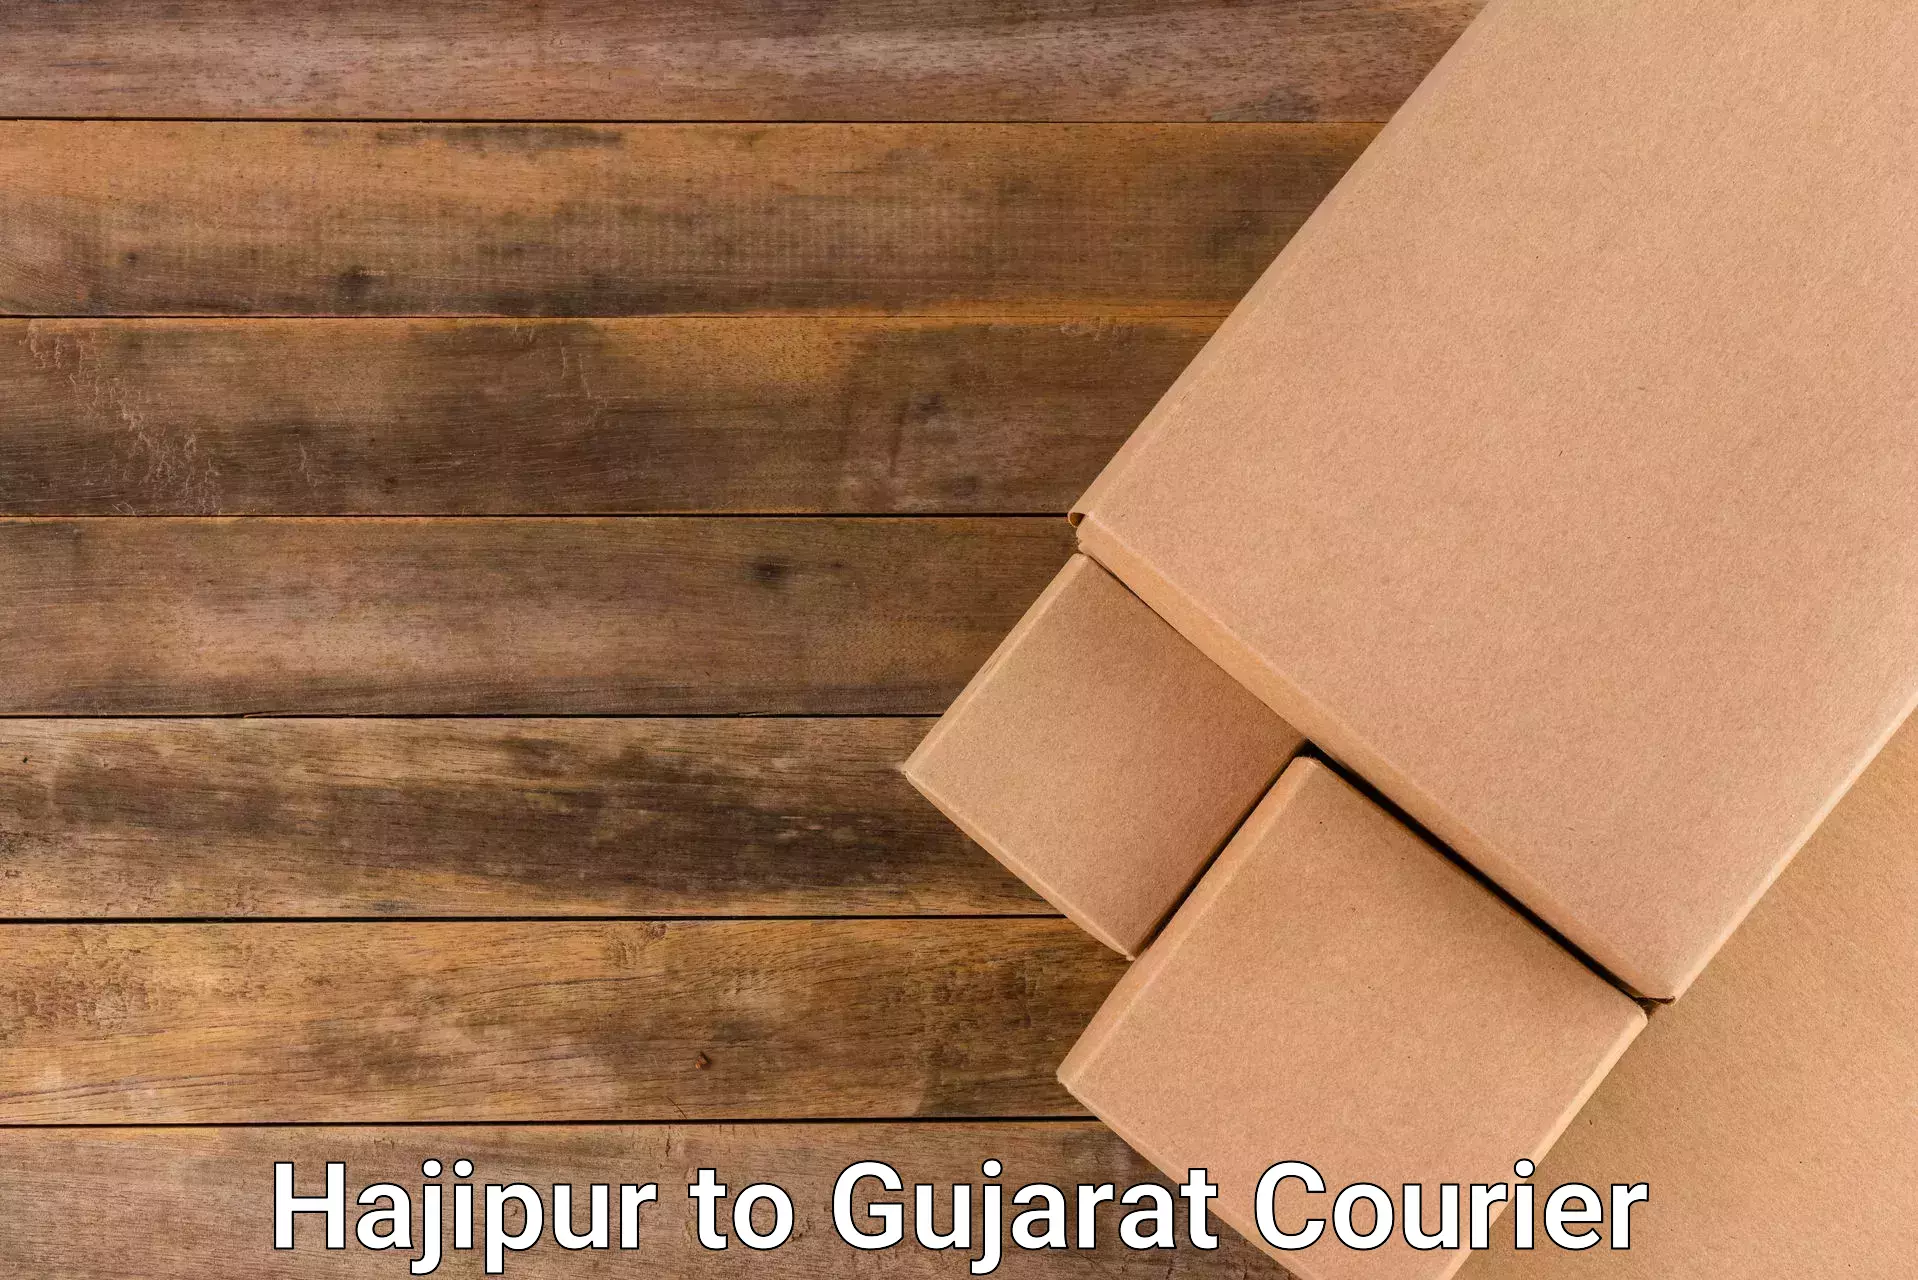 Reliable parcel services Hajipur to Bhachau